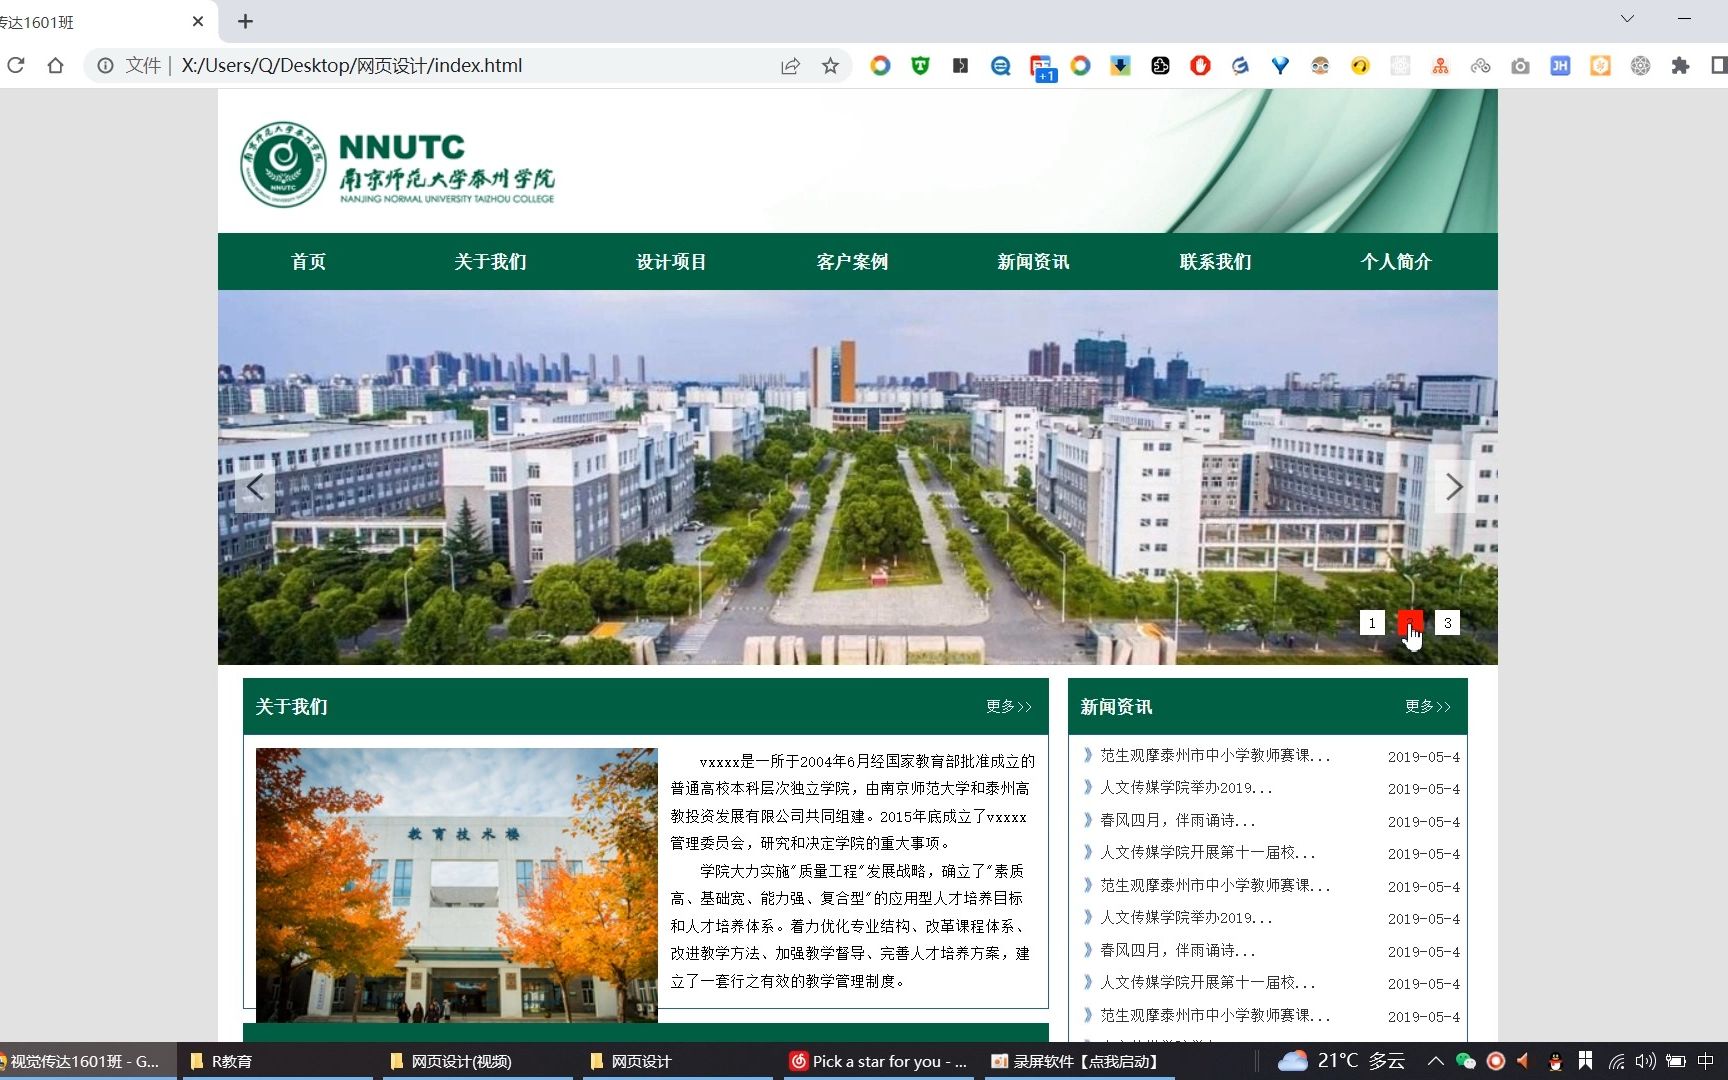 HTML期末作业-我的校园网站网页-南京师范大学 (11页) 学生网页设计作业源码